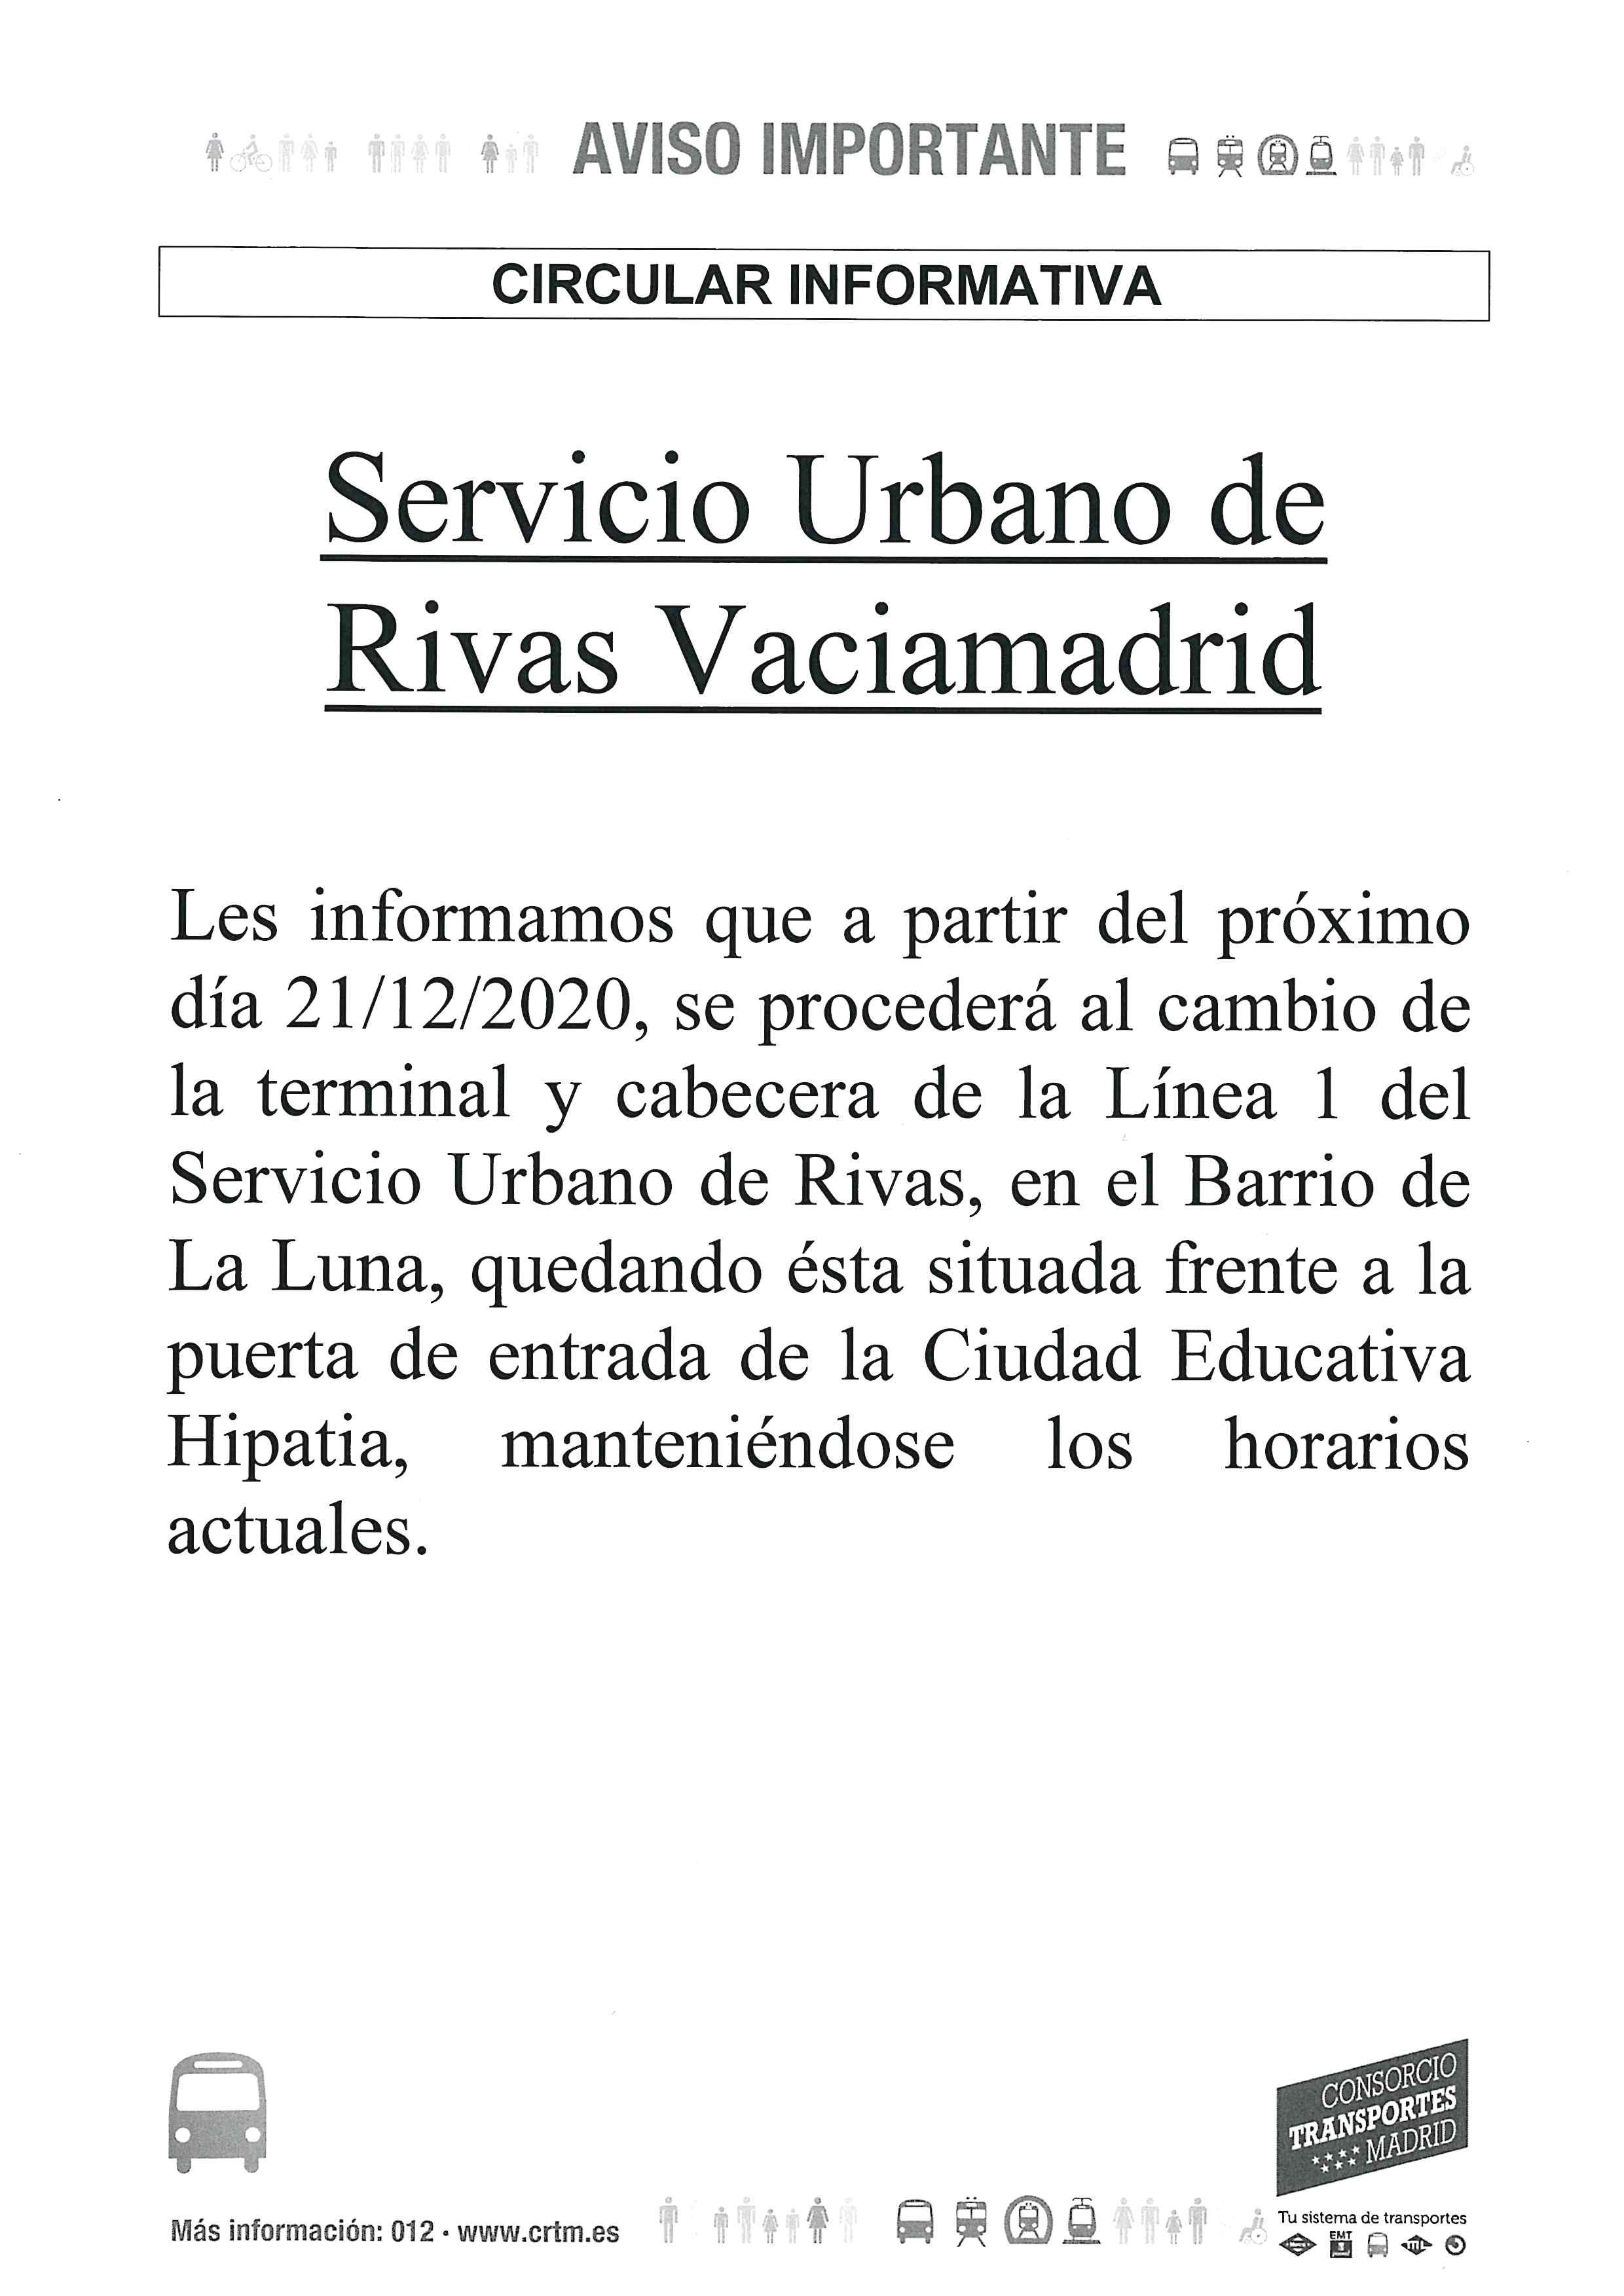 3- SERVICIO URBANO RIVAS VACIAMADRID